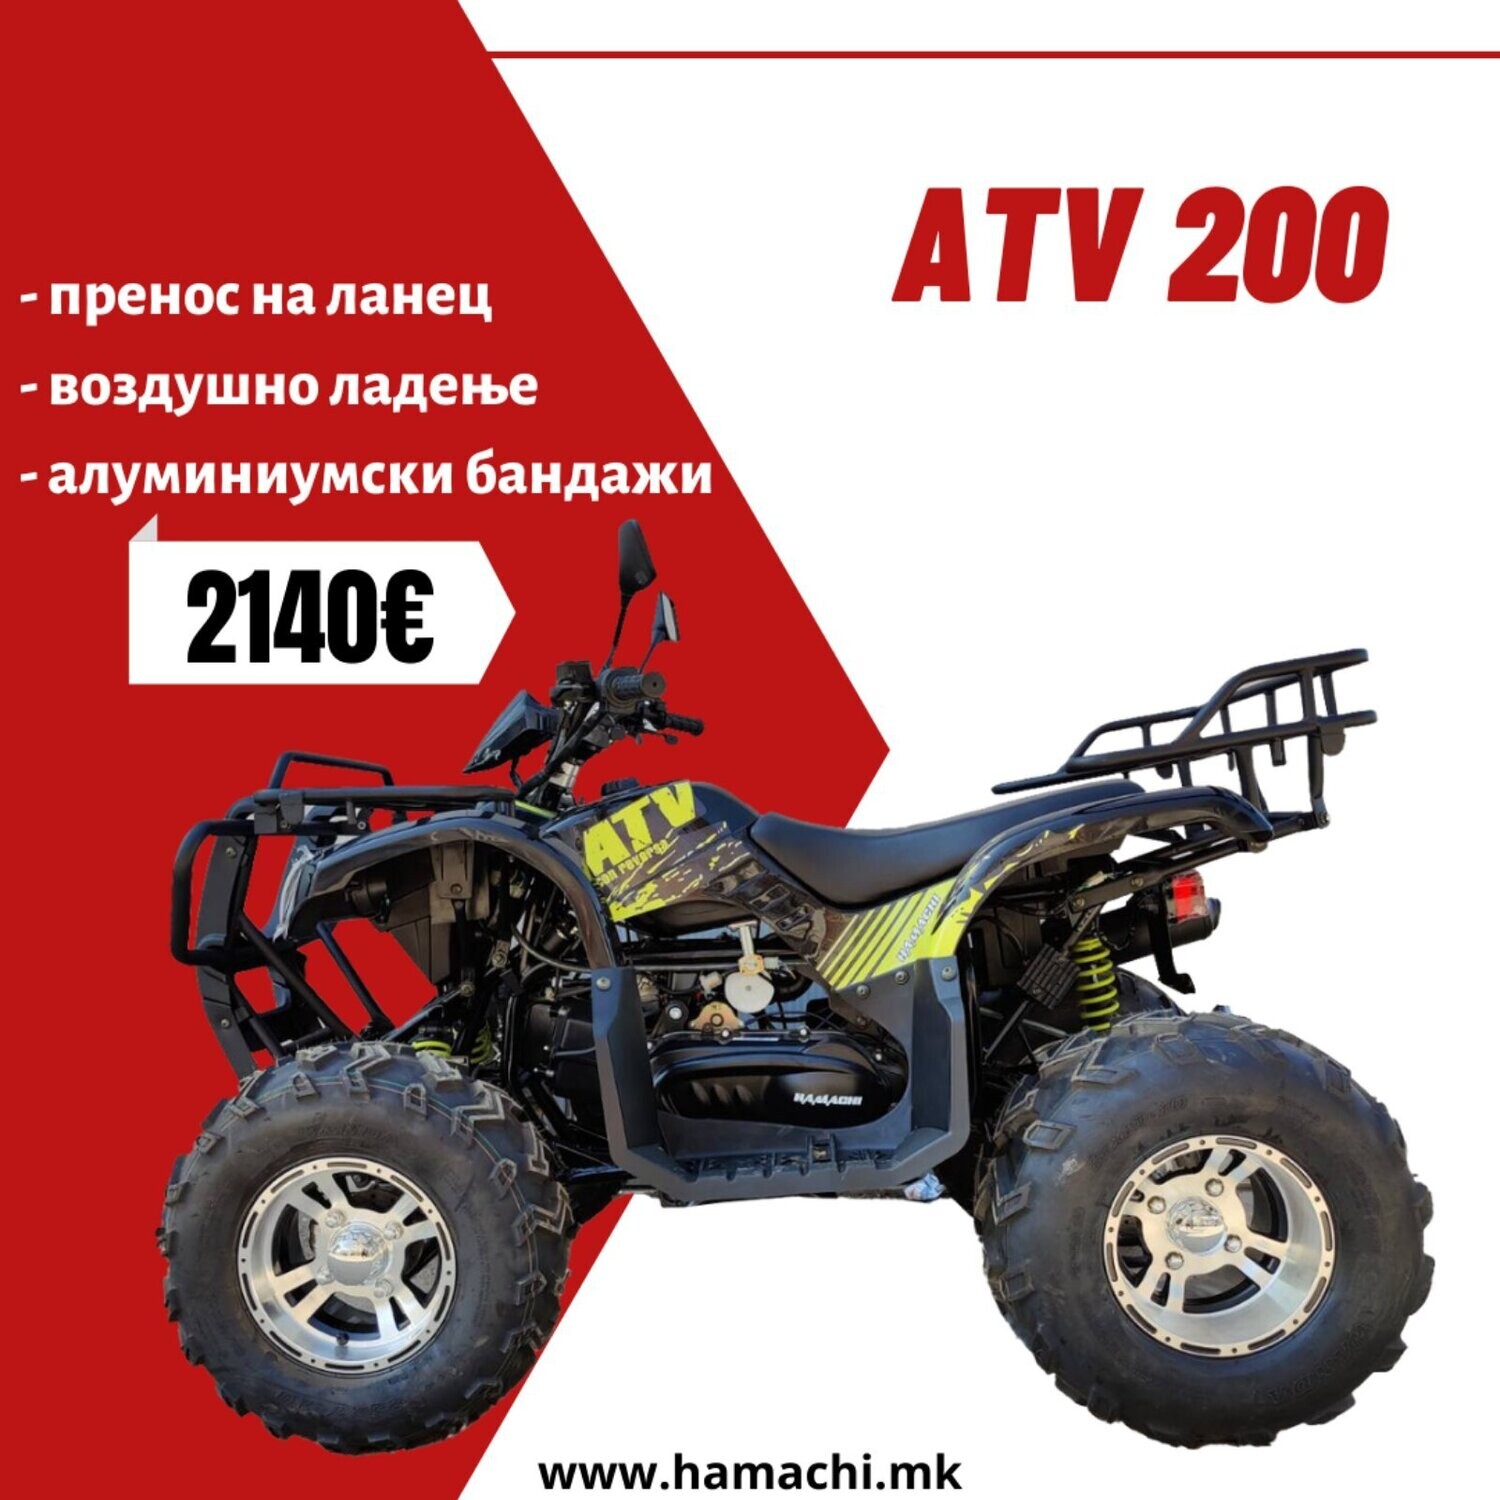 HAMACHI ATV 200